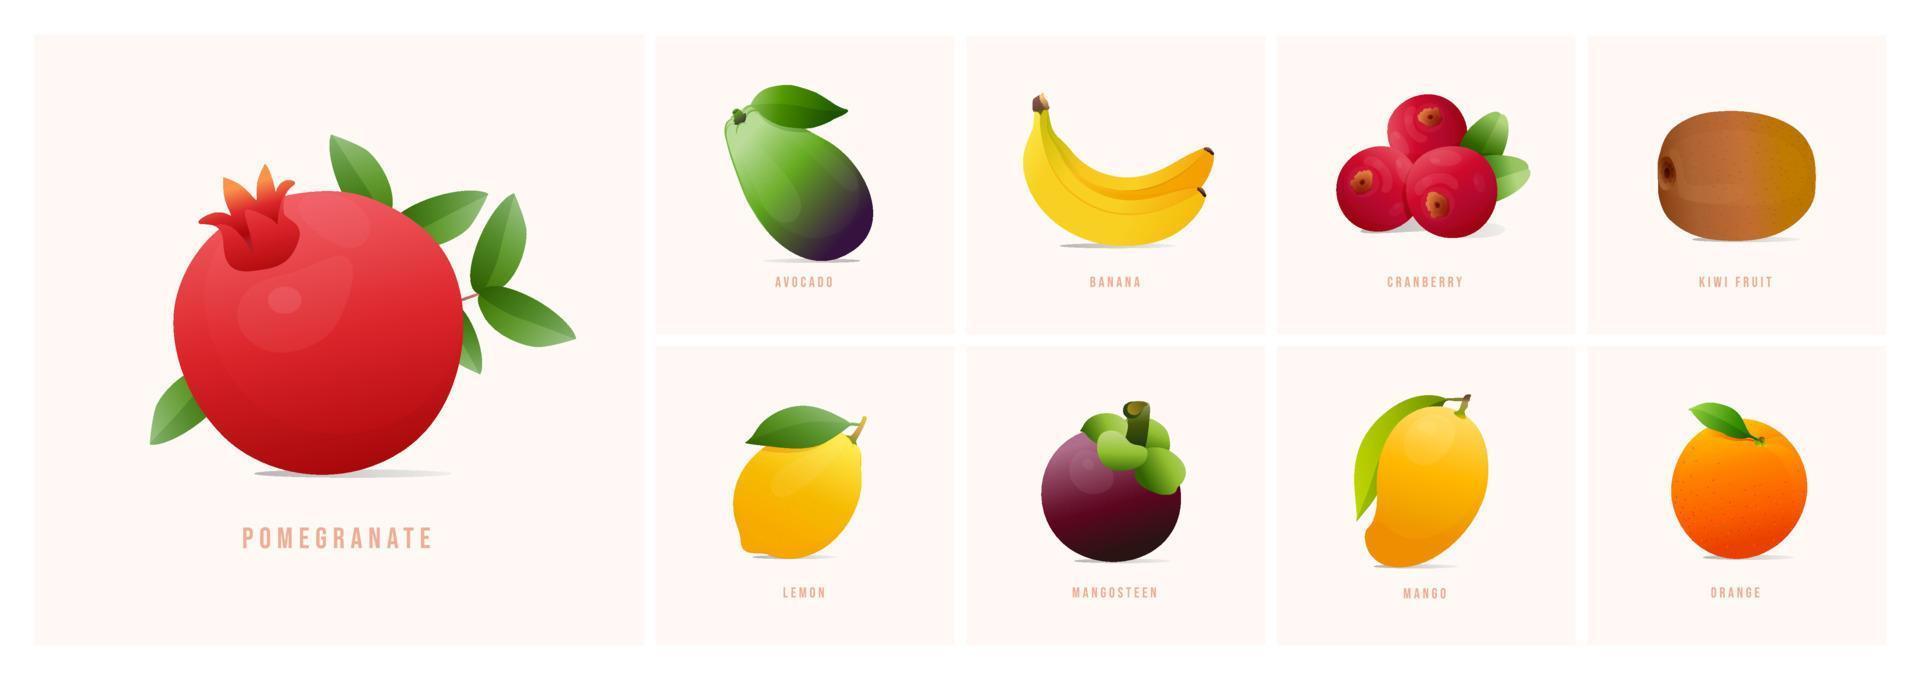 conjunto de frutas, ilustraciones de vectores de estilo moderno. granada, aguacate, plátano, arándano, kiwi, limón, mangostán, mango, naranja, etc.